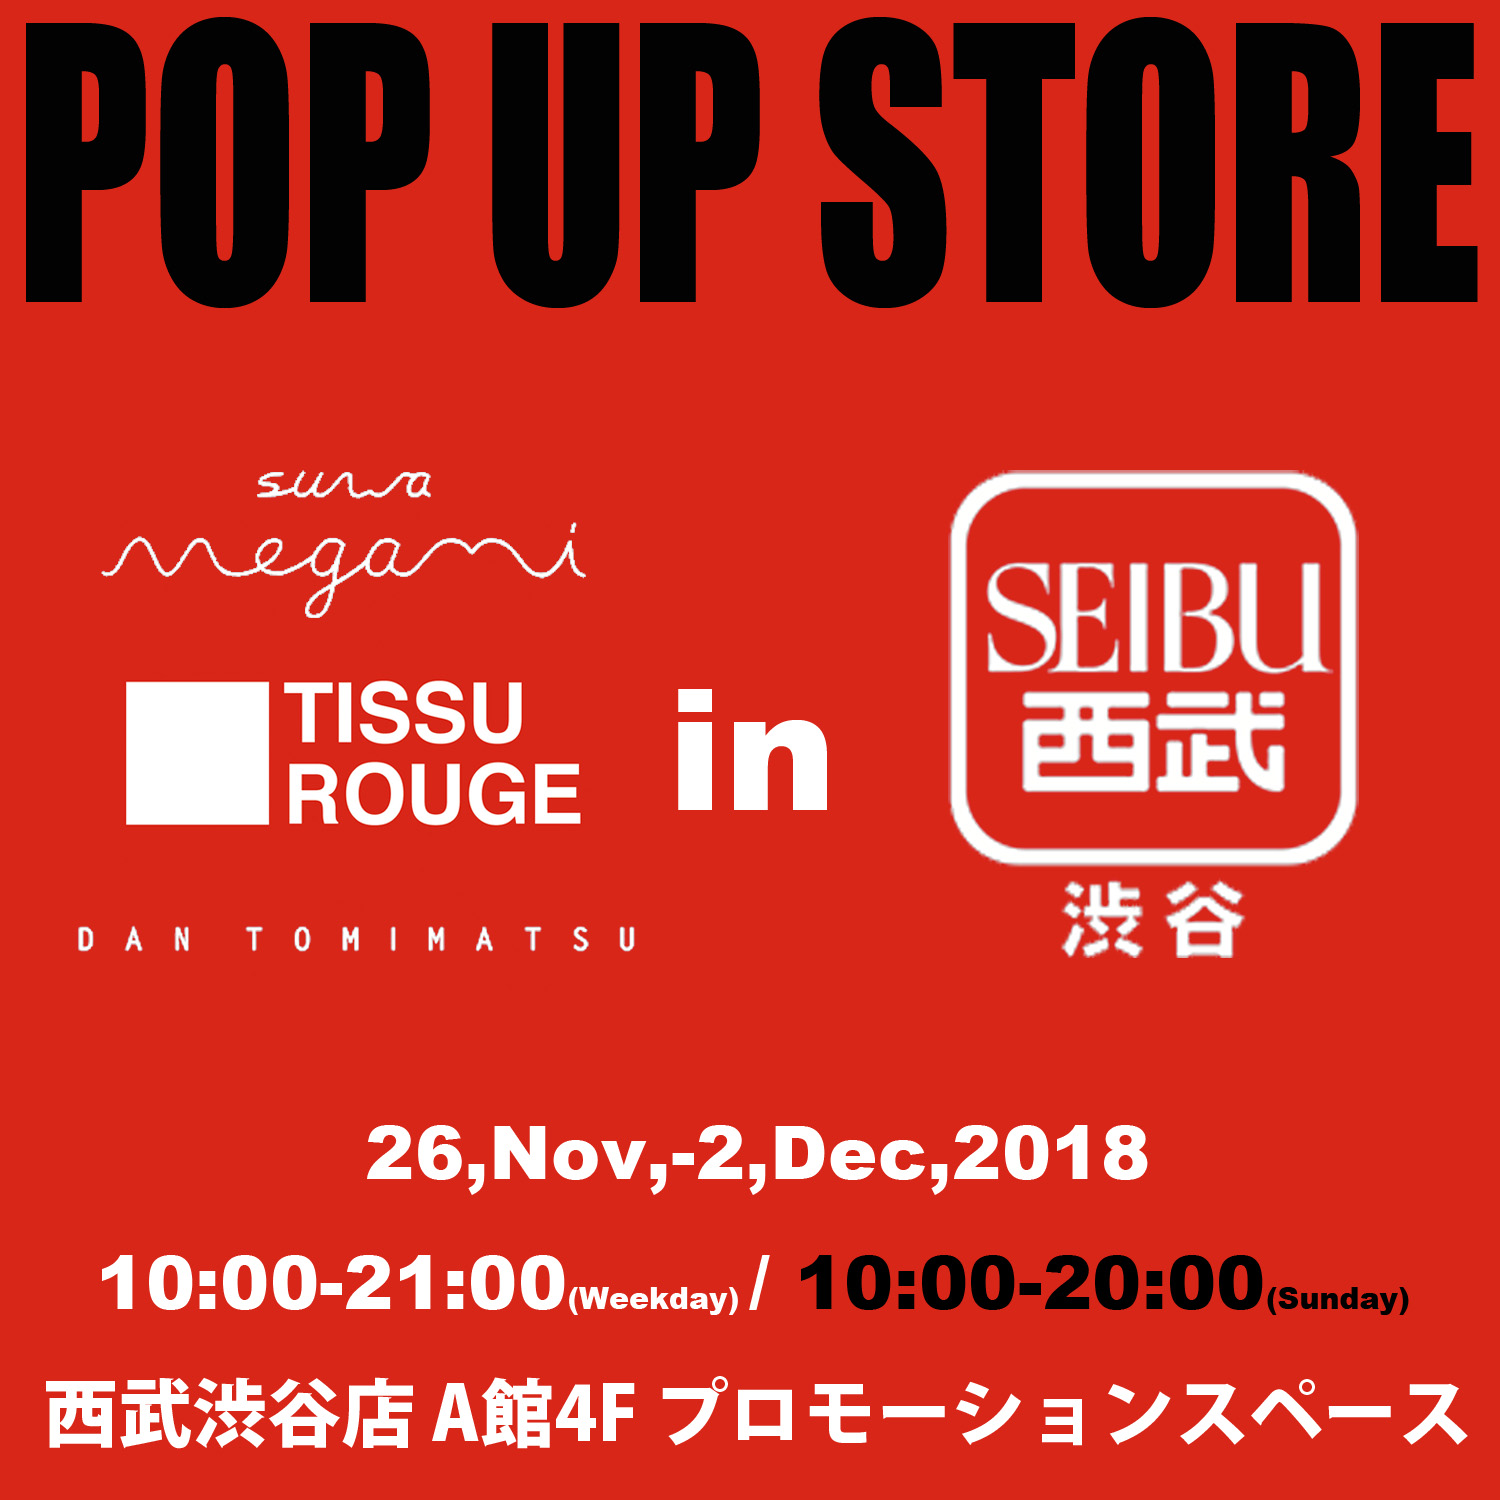 西武渋谷店 POP UP STORE のお知らせ